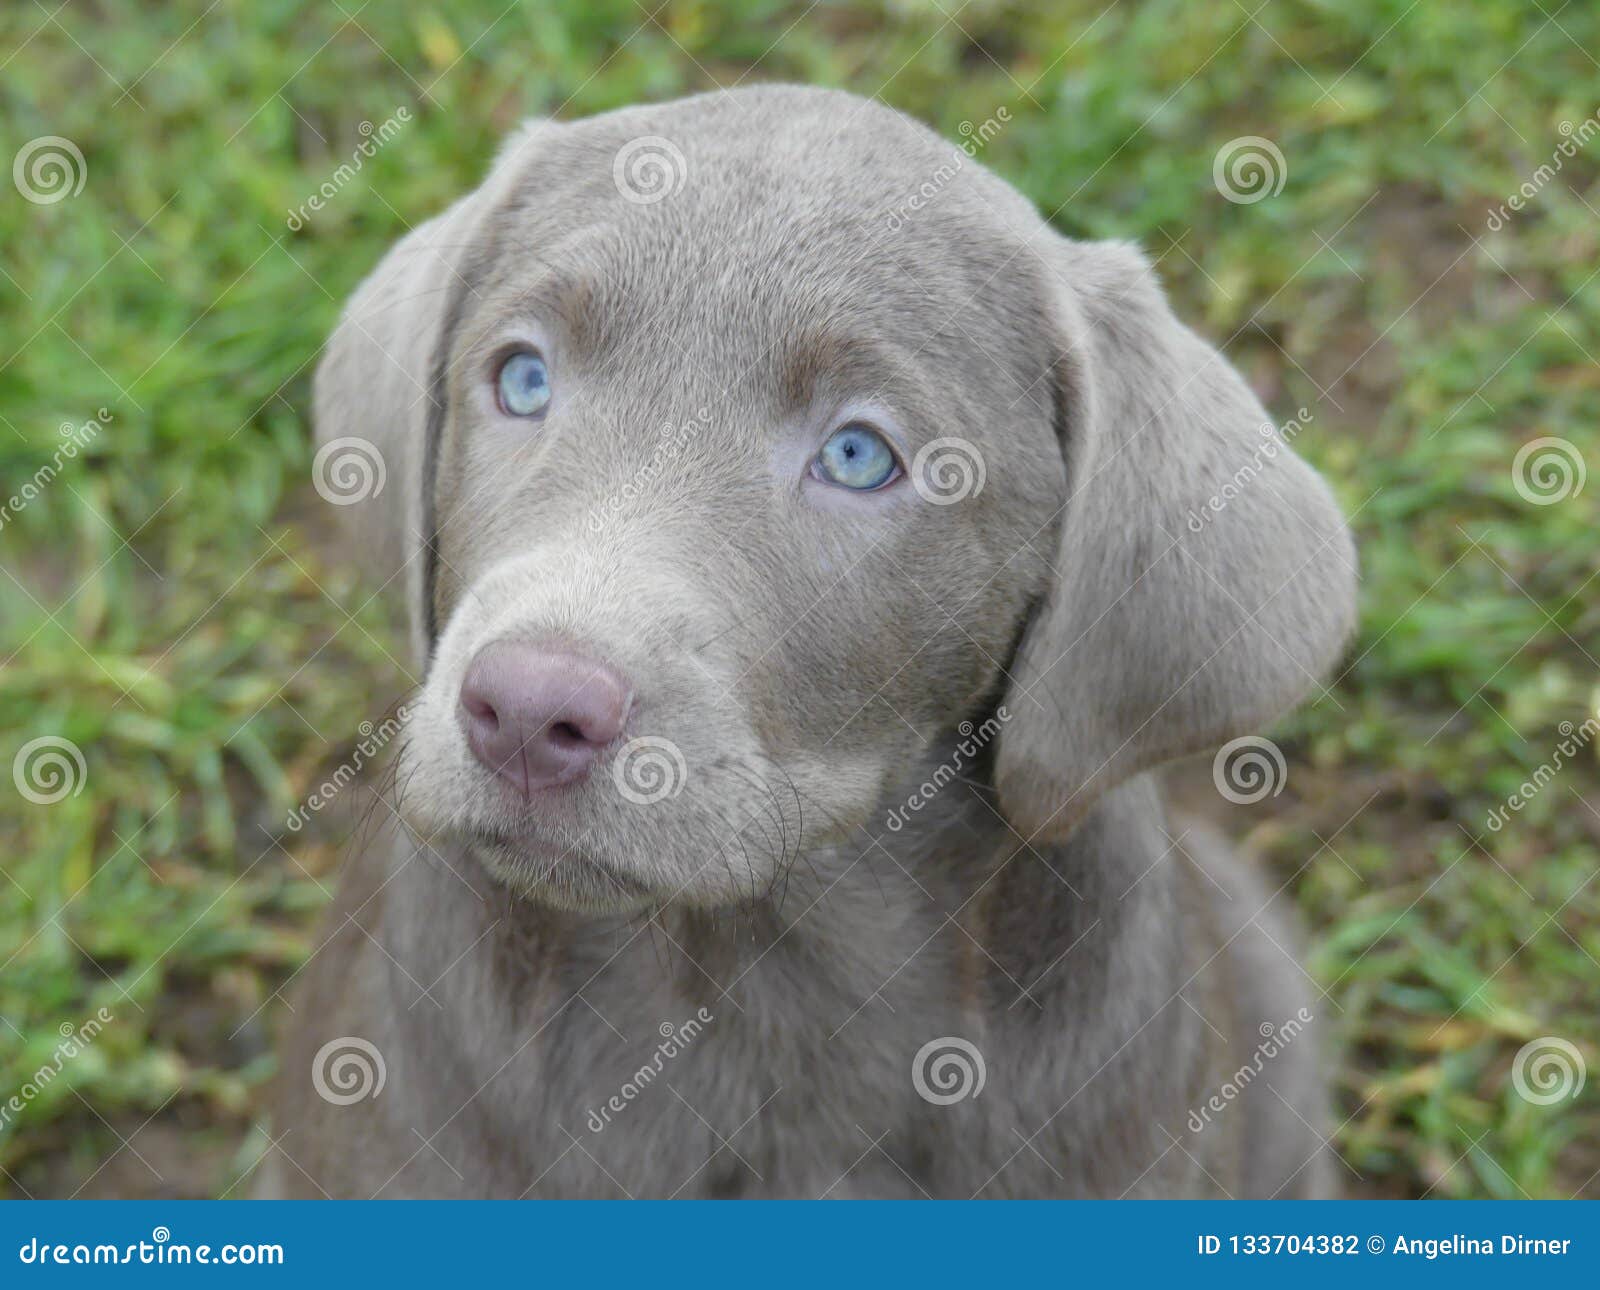 grey lab with blue eyes